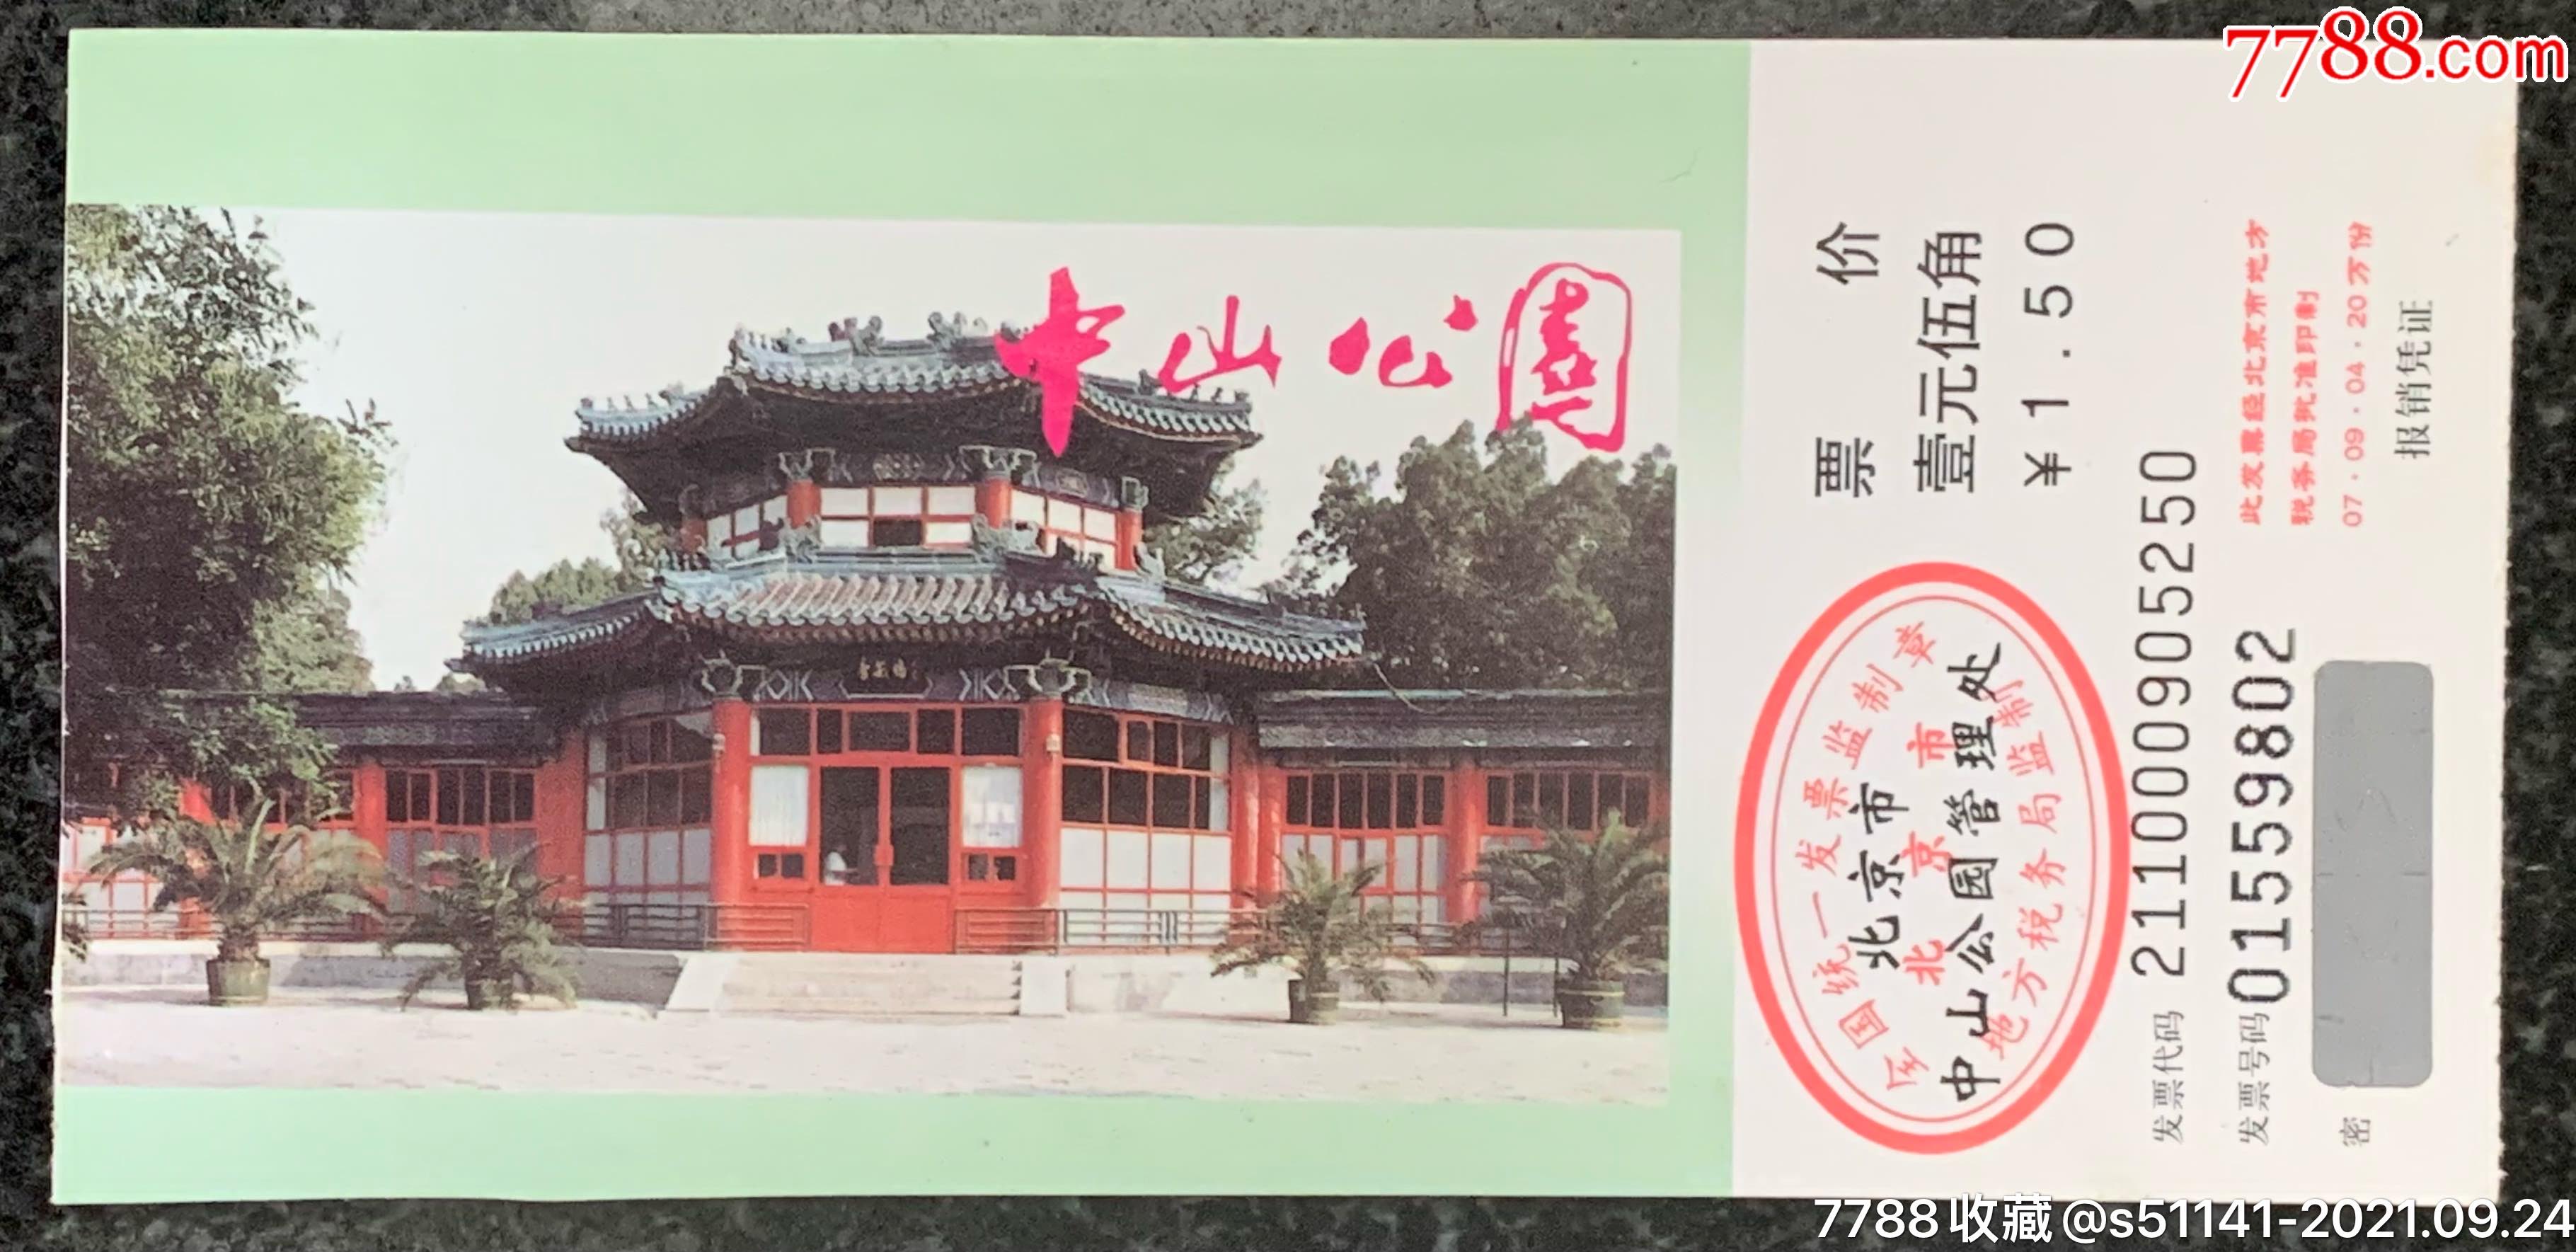 2007年北京中山公园门票此版本少品佳